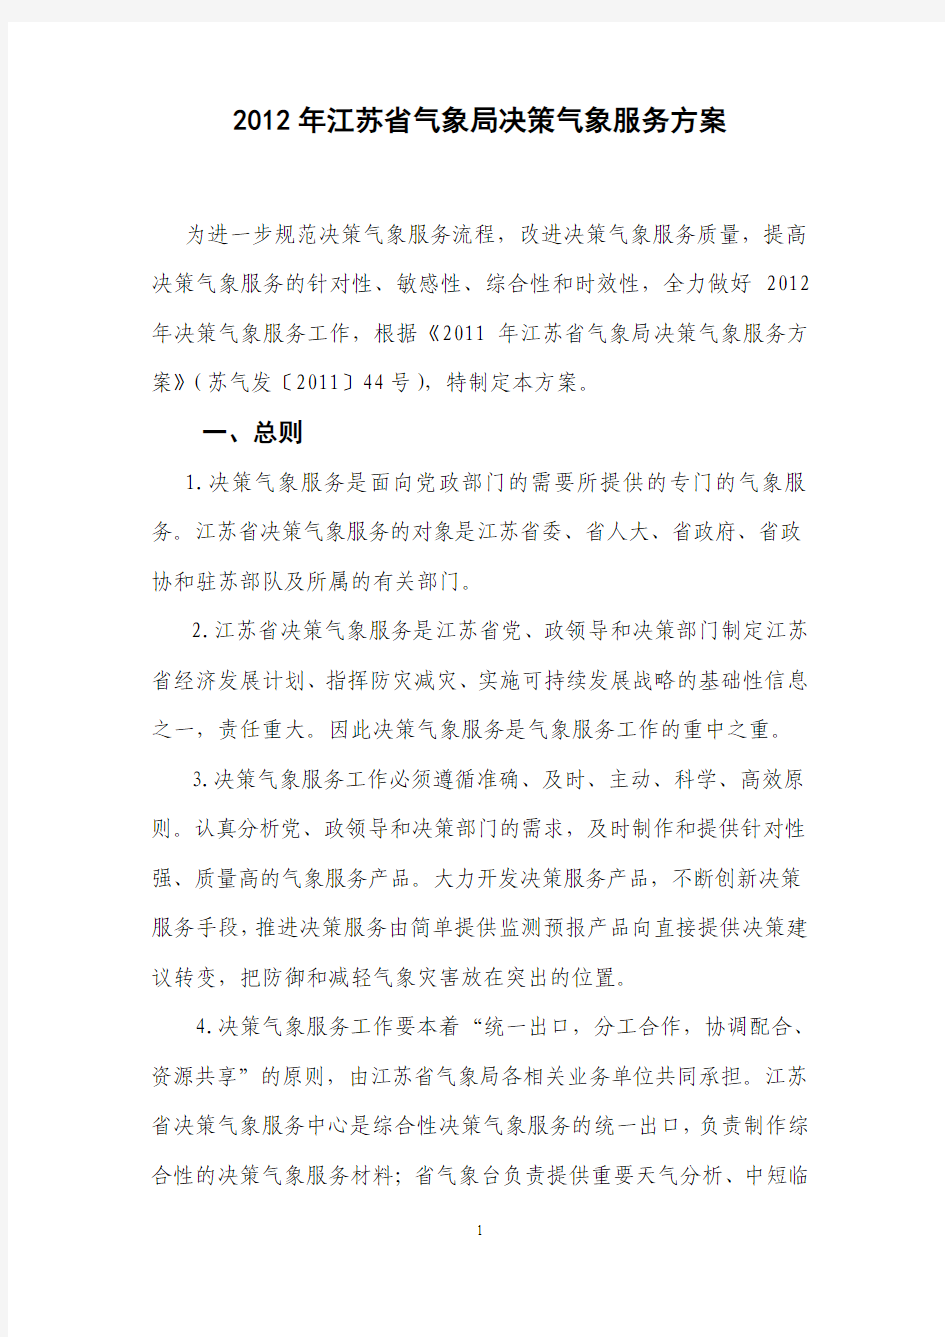 2012年江苏省气象局决策气象服务方案